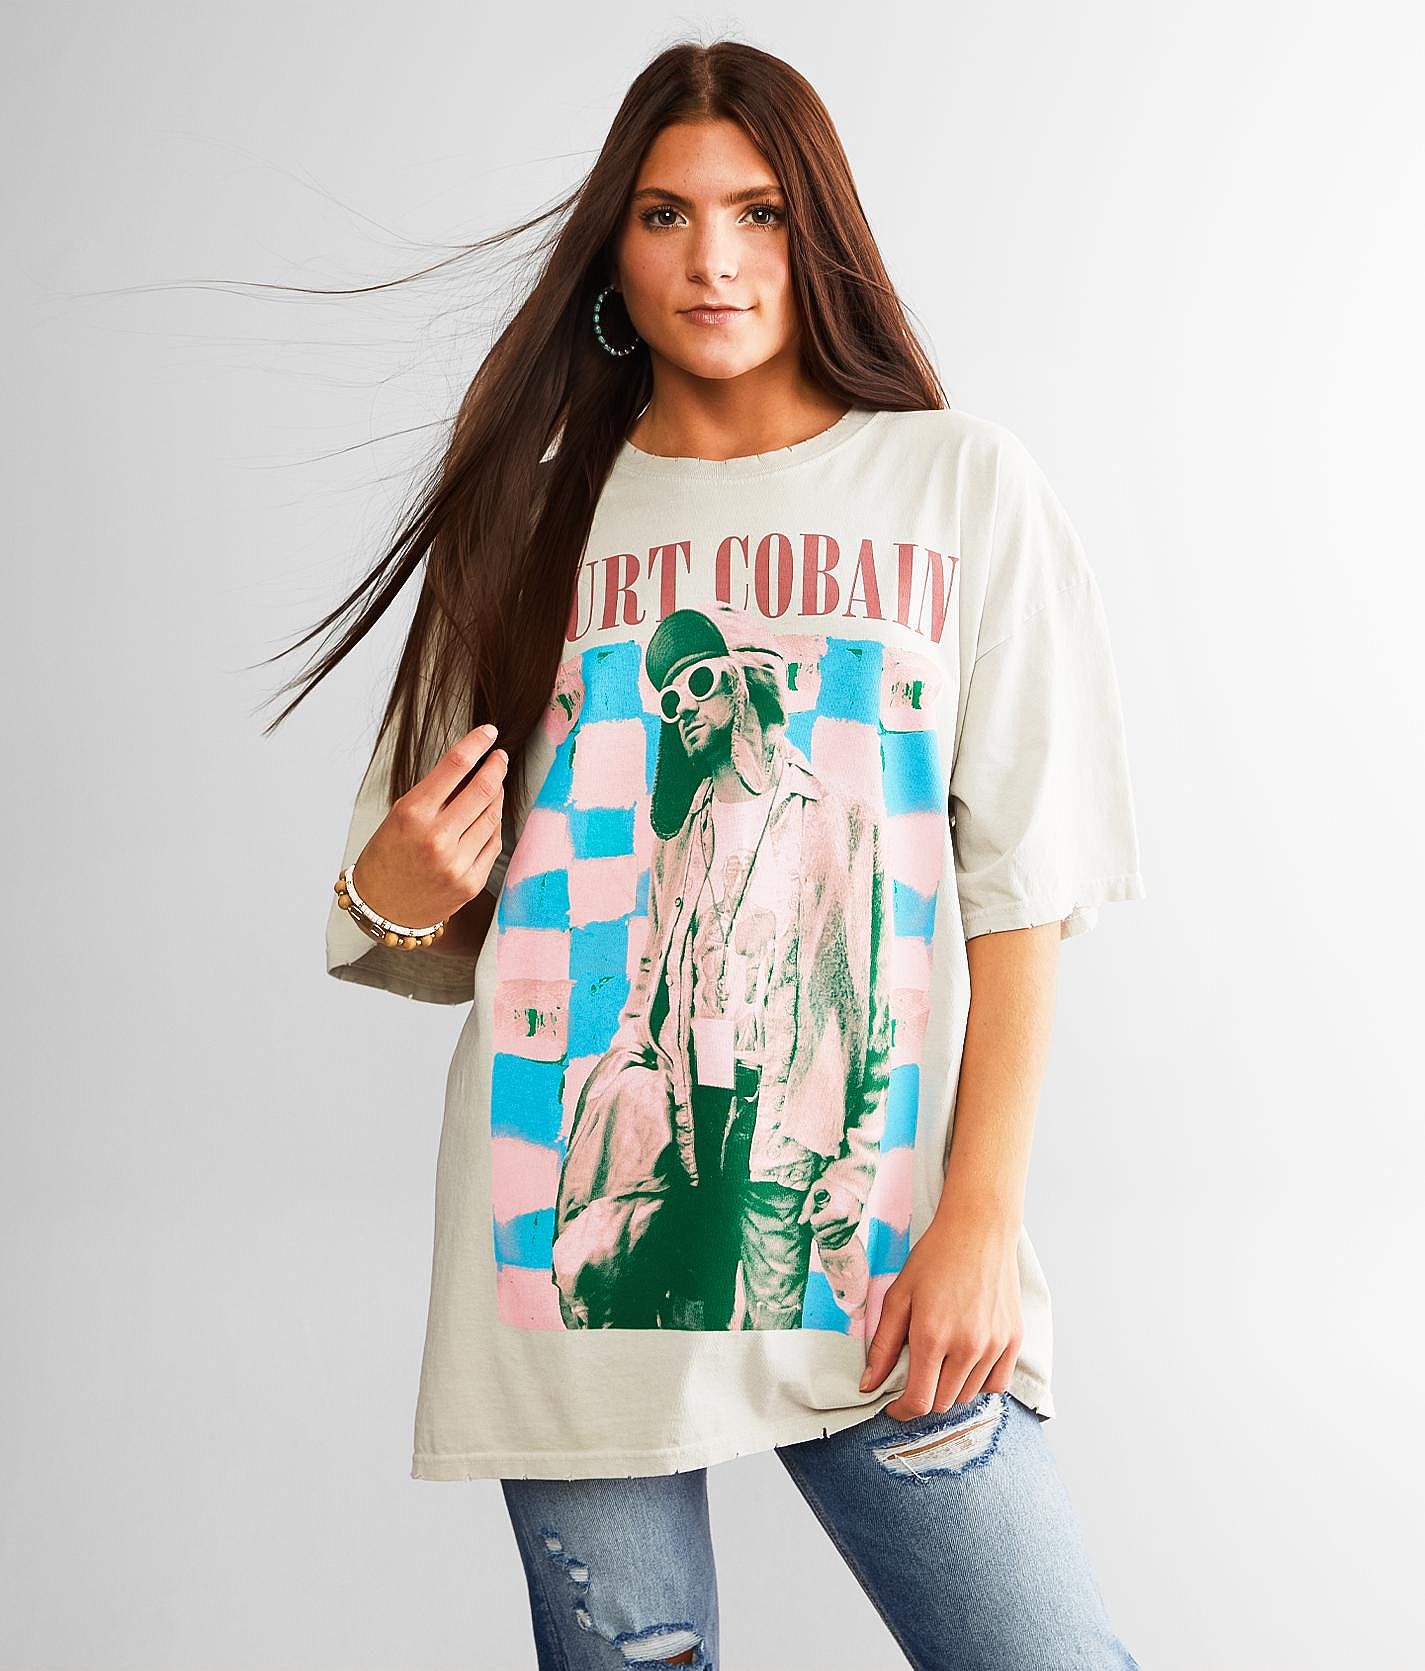 Kurt Cobain Band T-Shirt - One Size - Women's T-Shirts in Off 